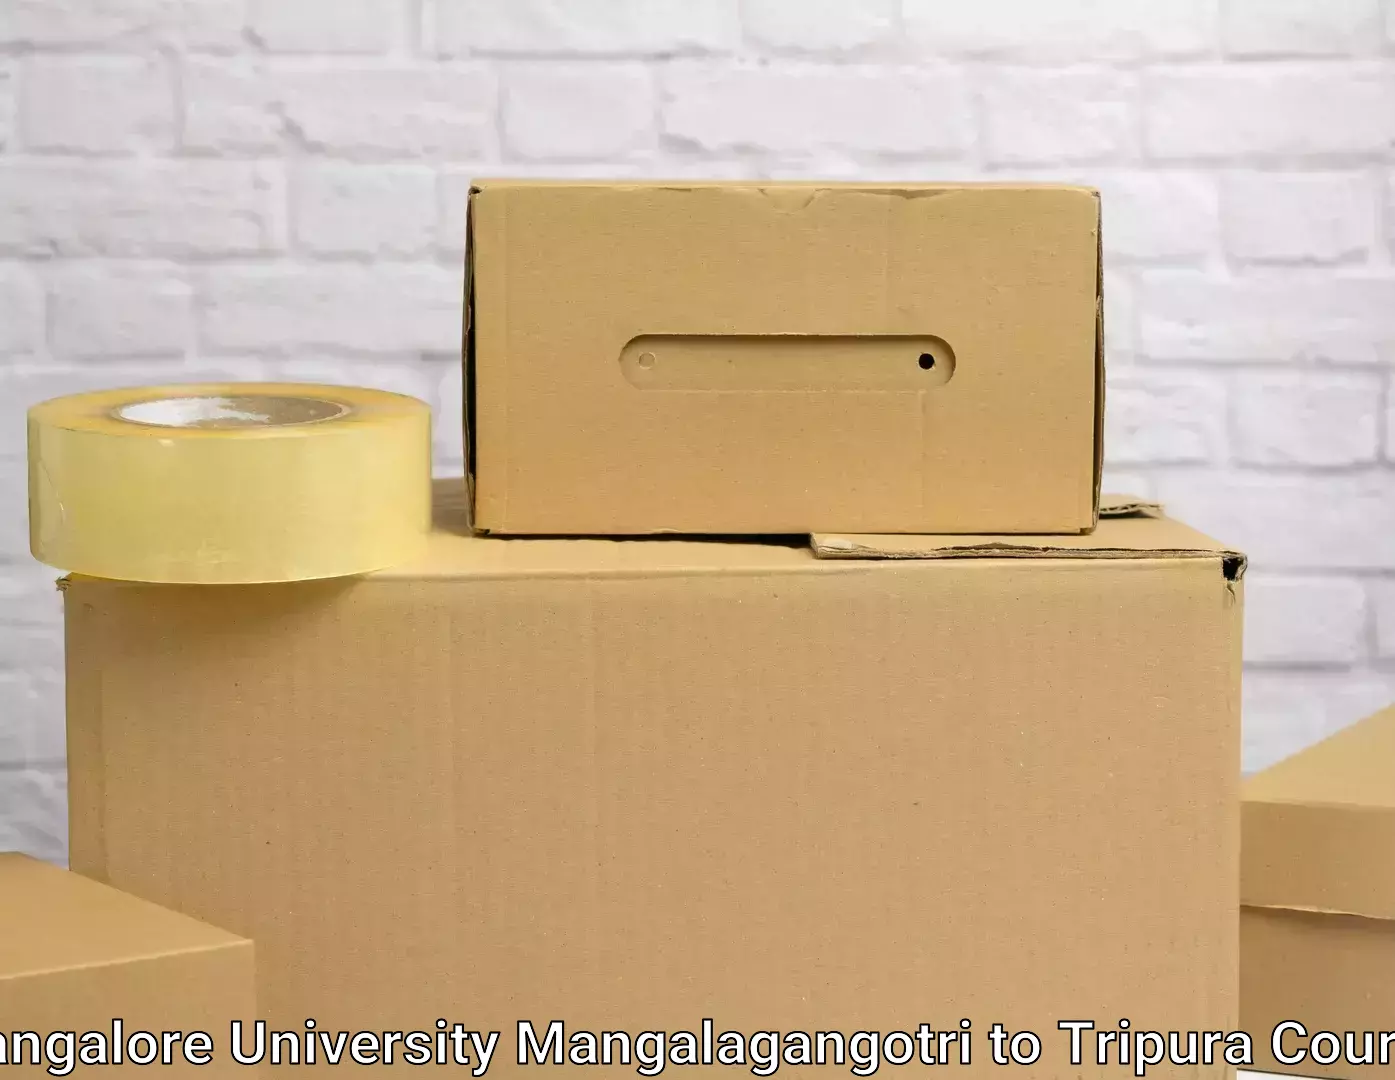 Household goods transport service Mangalore University Mangalagangotri to Agartala